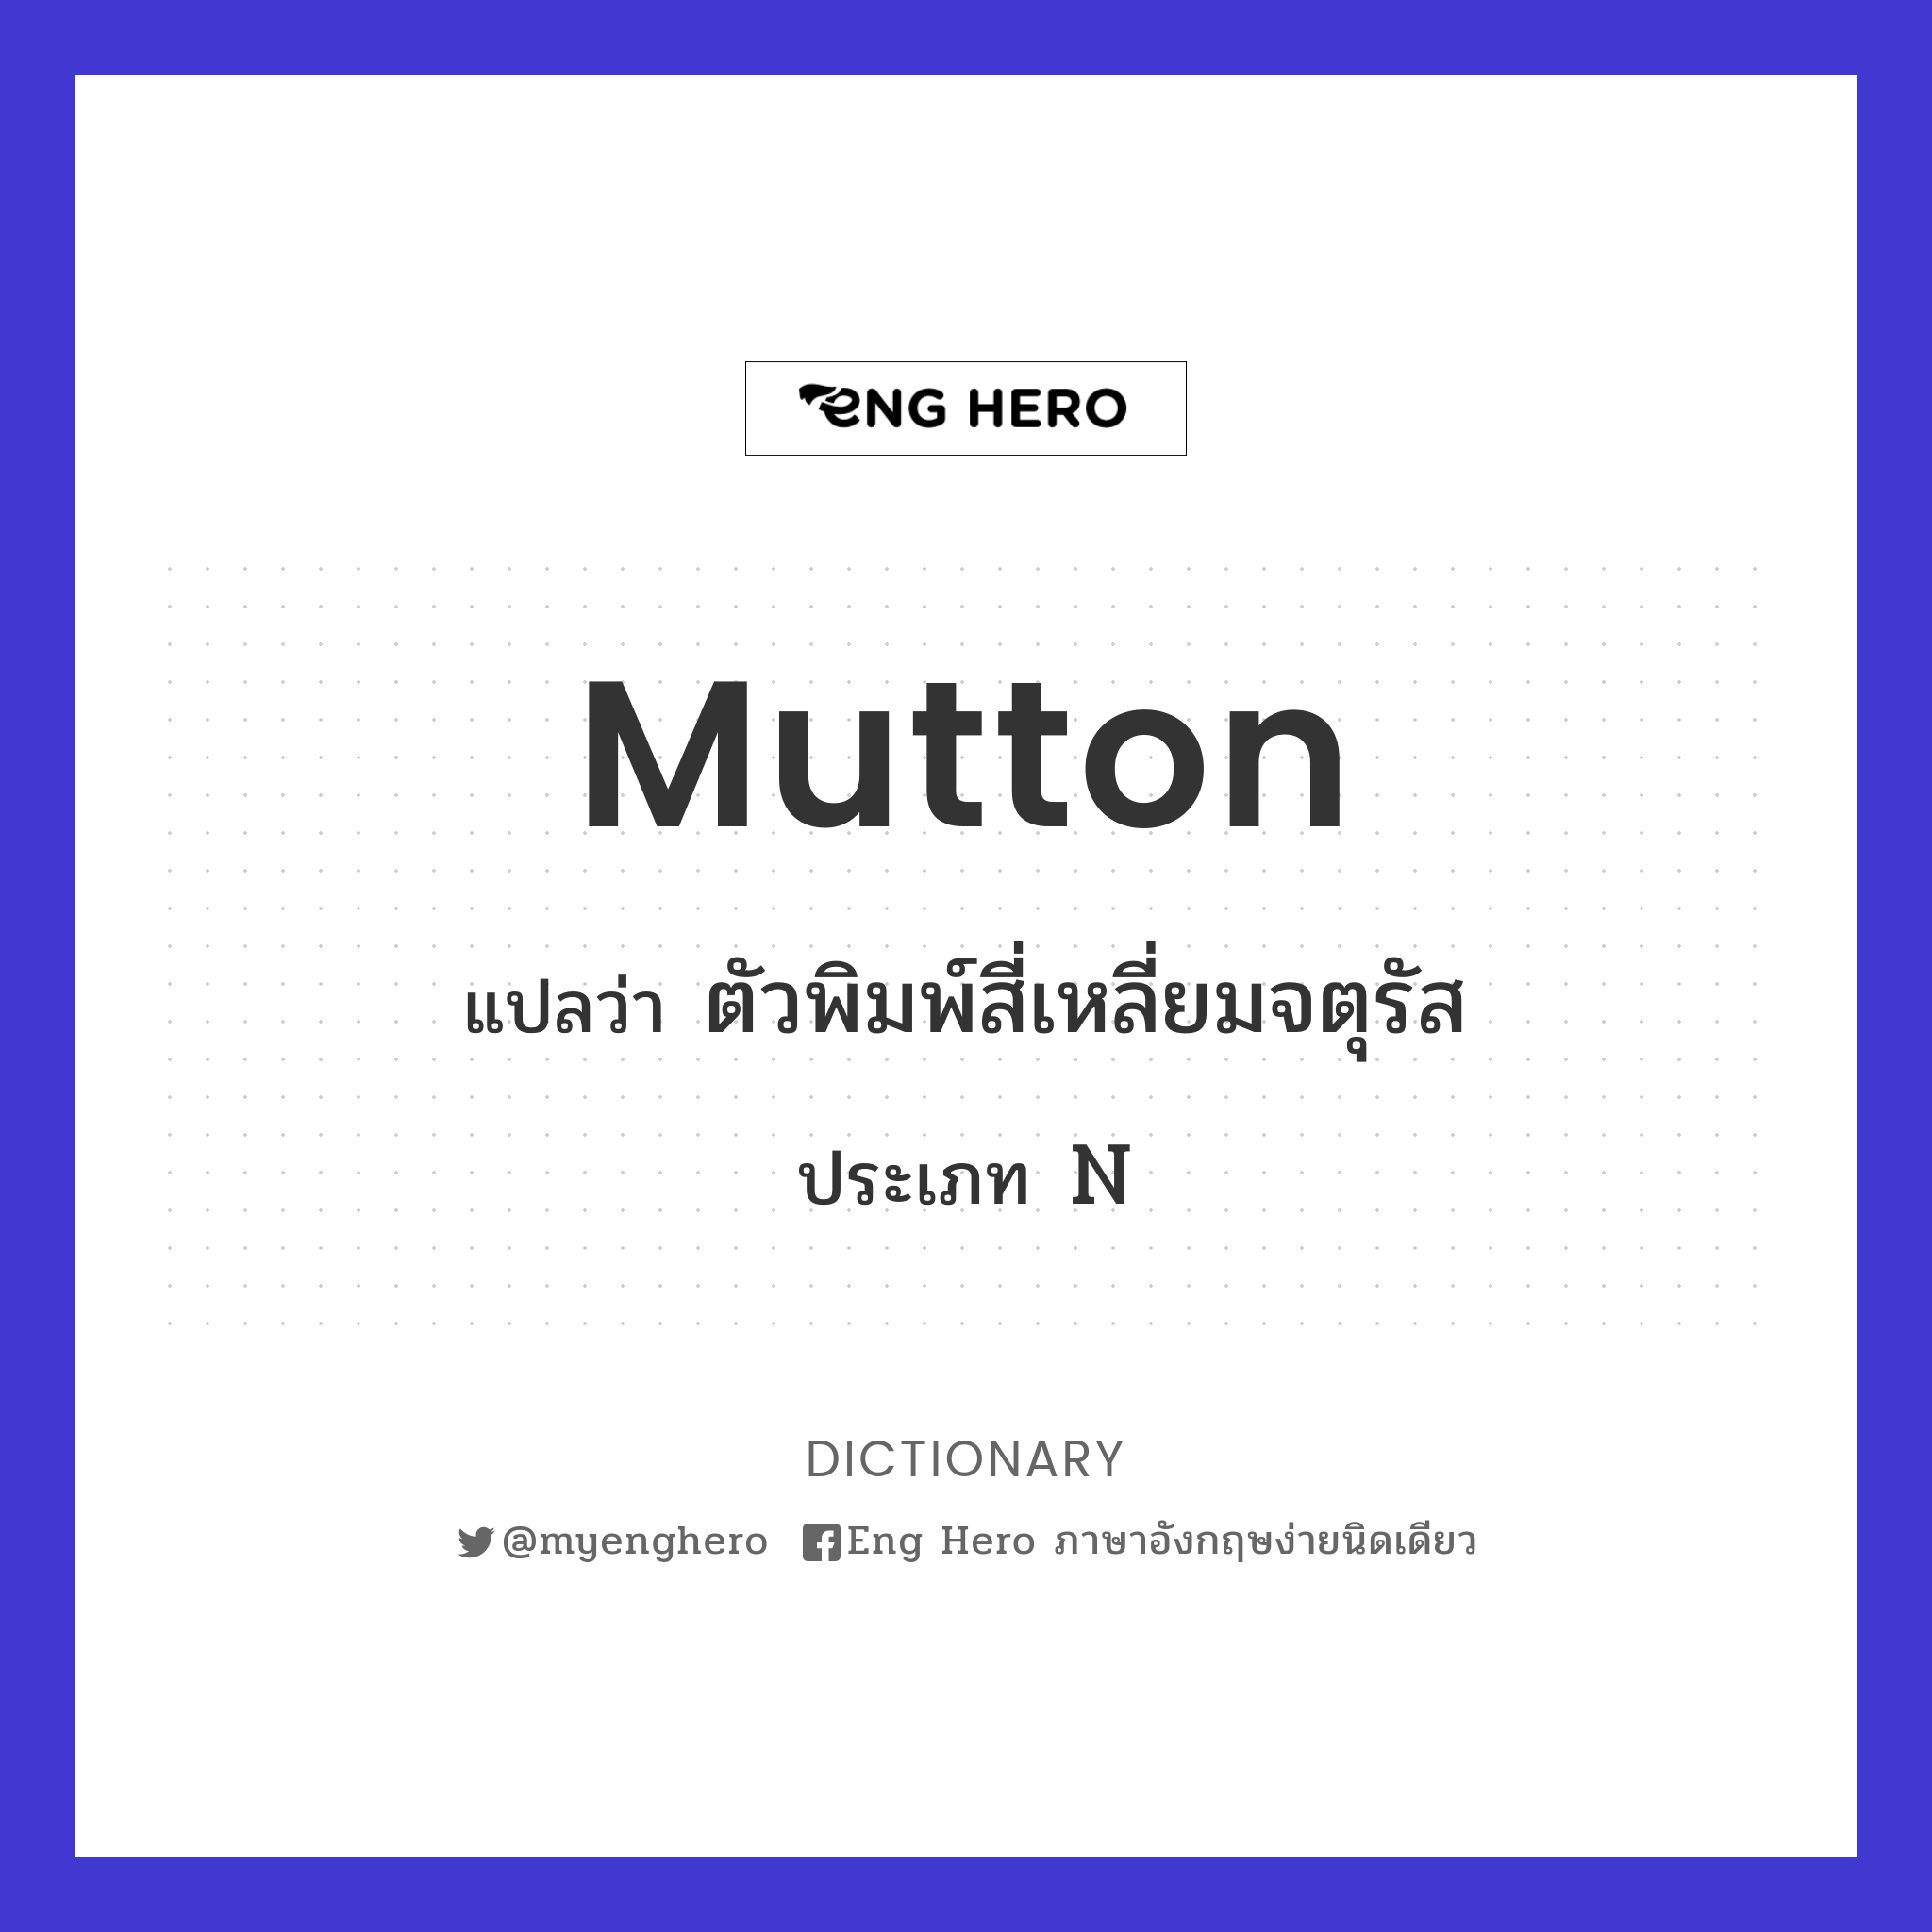 mutton